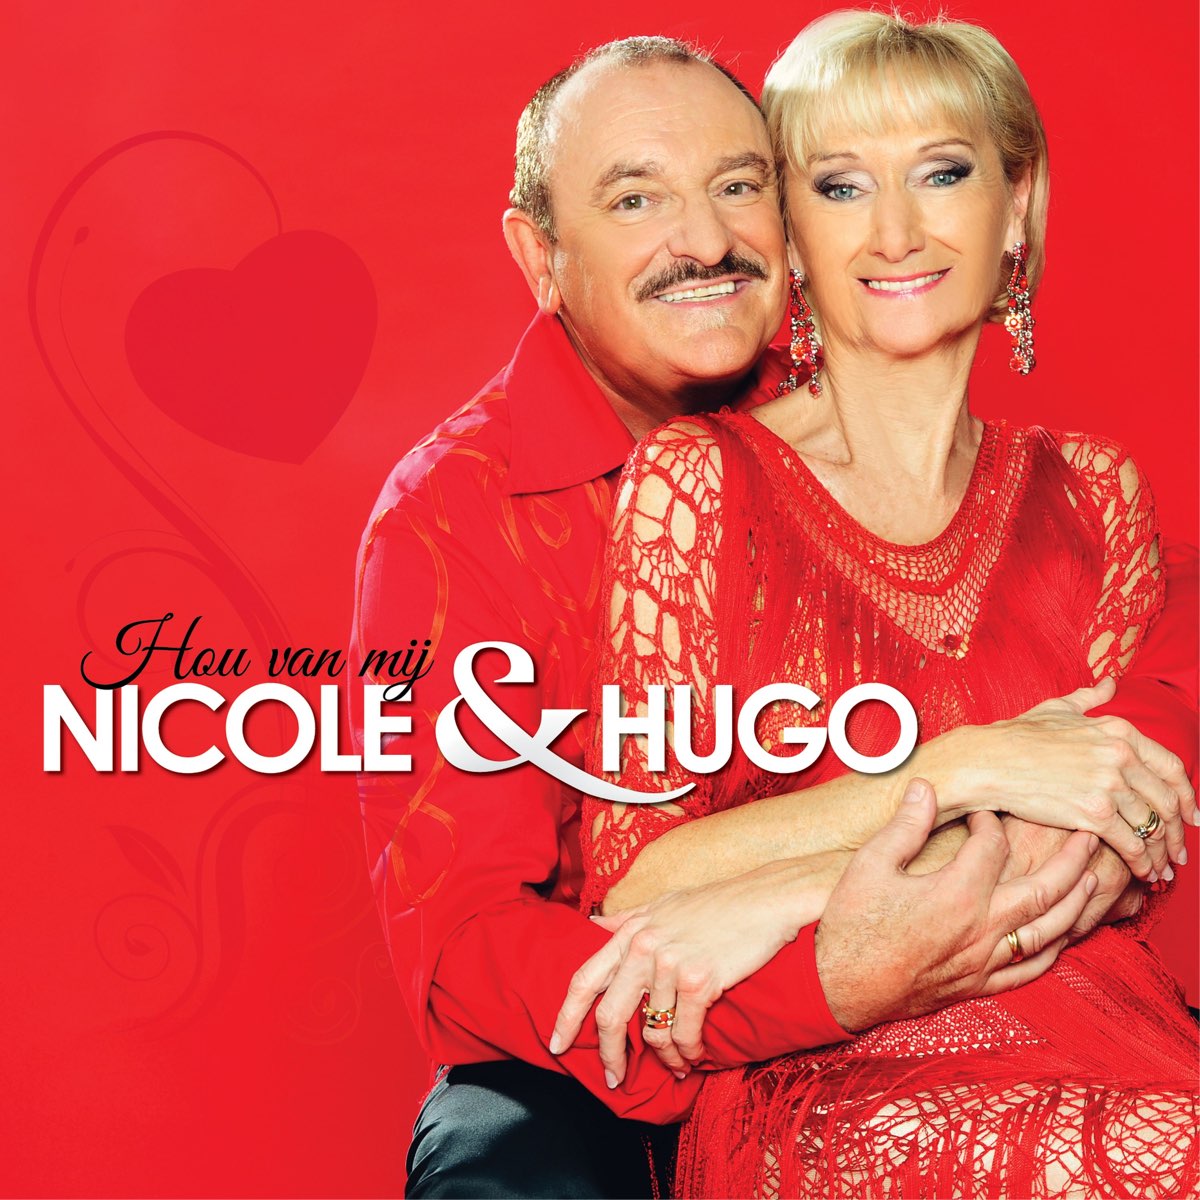 Nicole & Hugo. Nicole Hugo Goeiemorgen. Nicole & Hugo бельгийский дуэт. Nicole hugo morgen